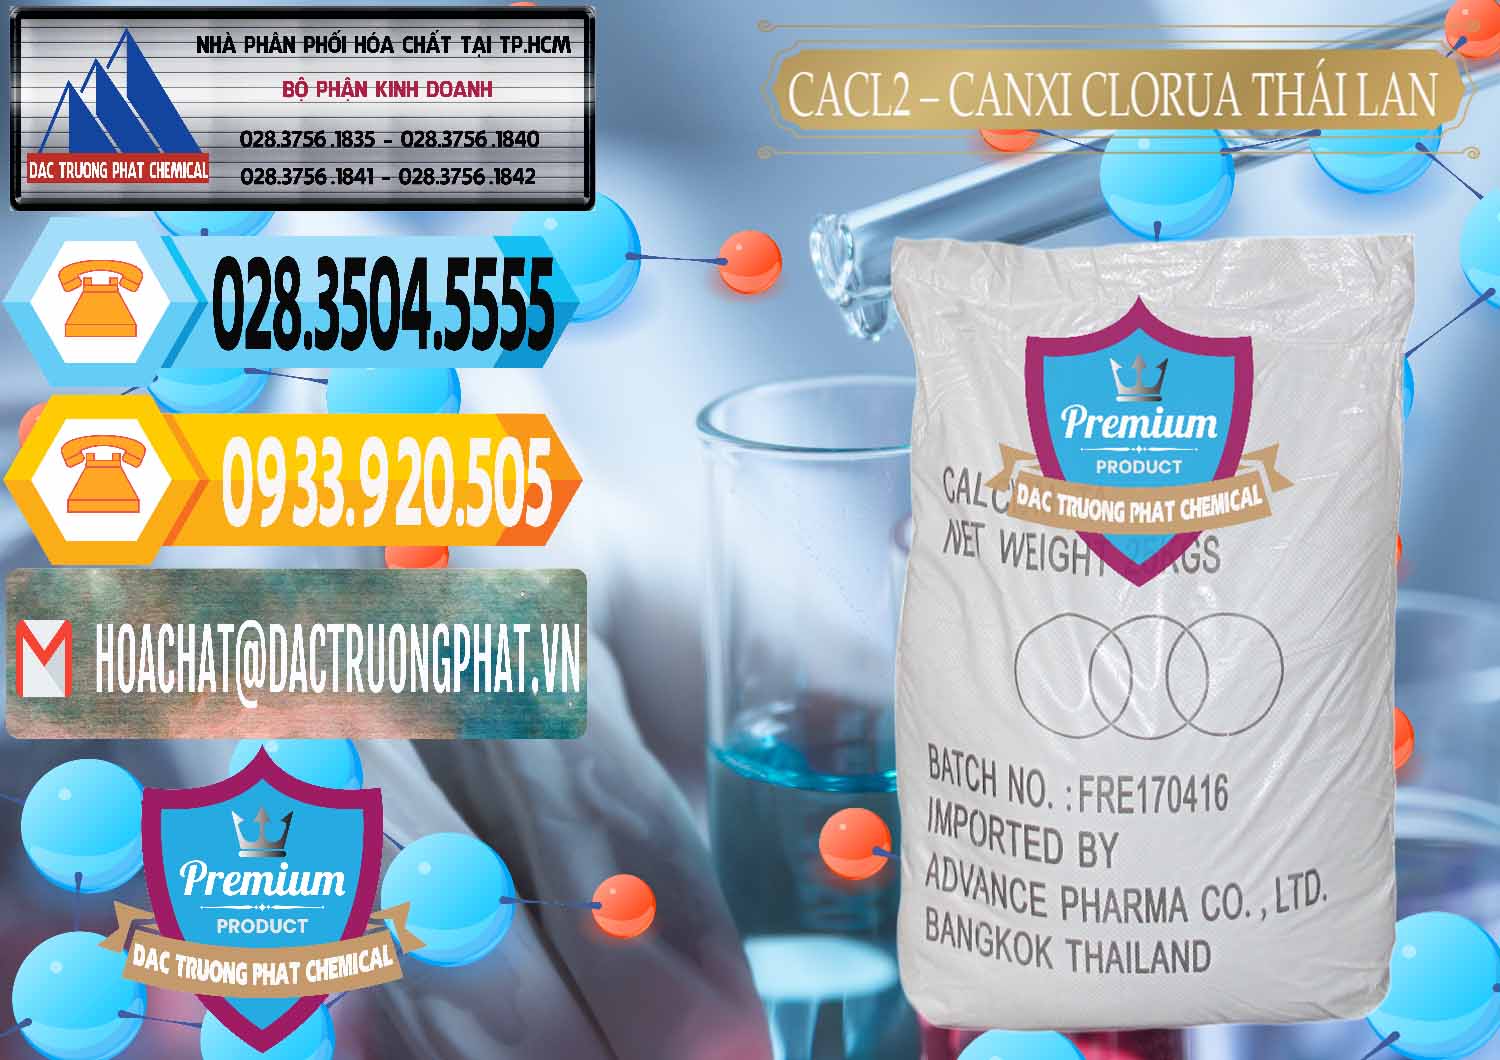 Cty chuyên cung ứng - bán CaCl2 – Canxi Clorua 96% Thái Lan - 0042 - Nơi cung cấp và kinh doanh hóa chất tại TP.HCM - hoachattayrua.net